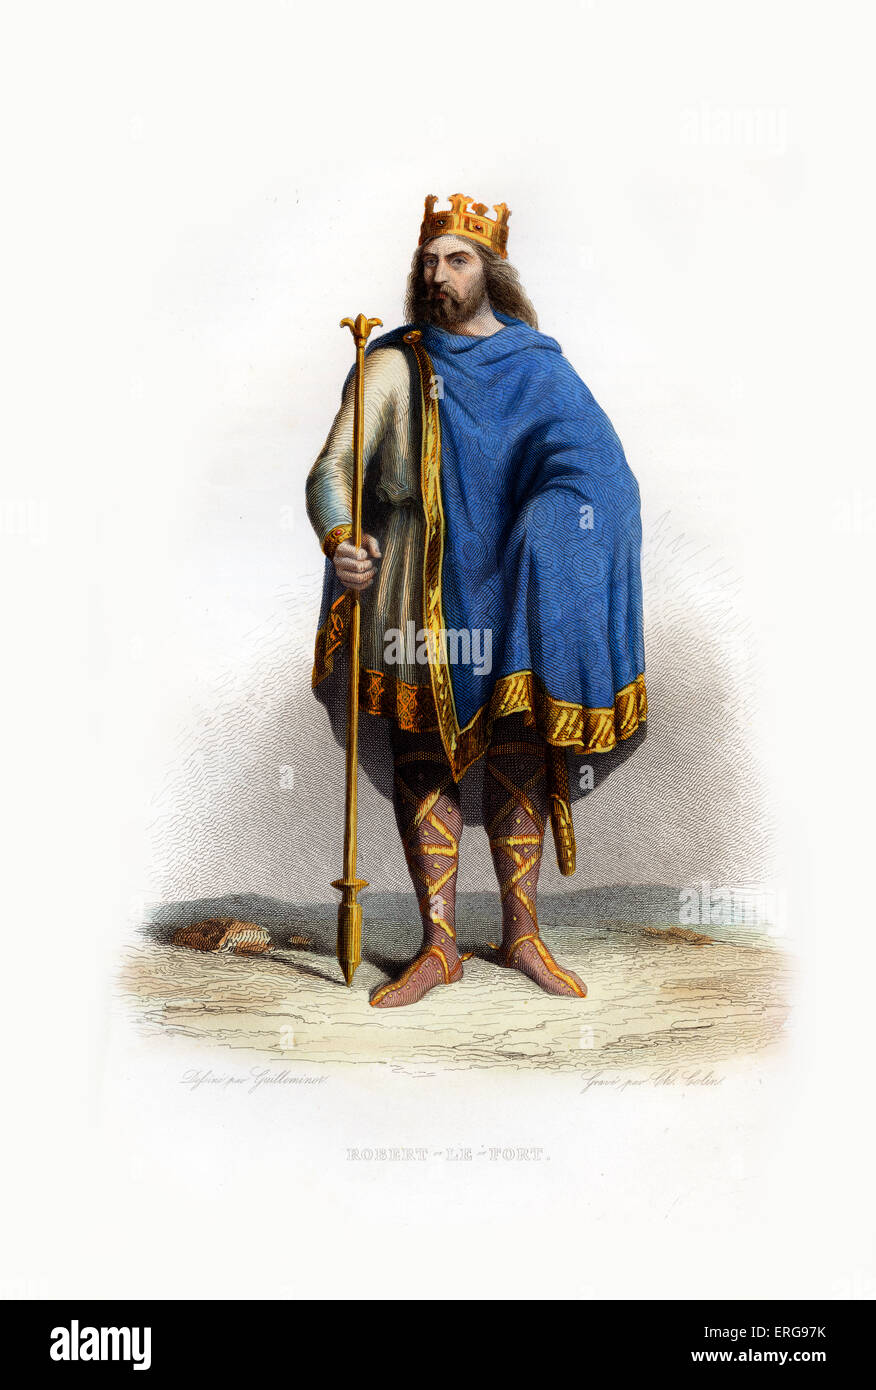 Robert IV der starke, auch bekannt als Rutper. (Mittelalterliche erblichen Adligen) Markgraf in Neustrien. C. 820-866. Kupferstich von Stockfoto